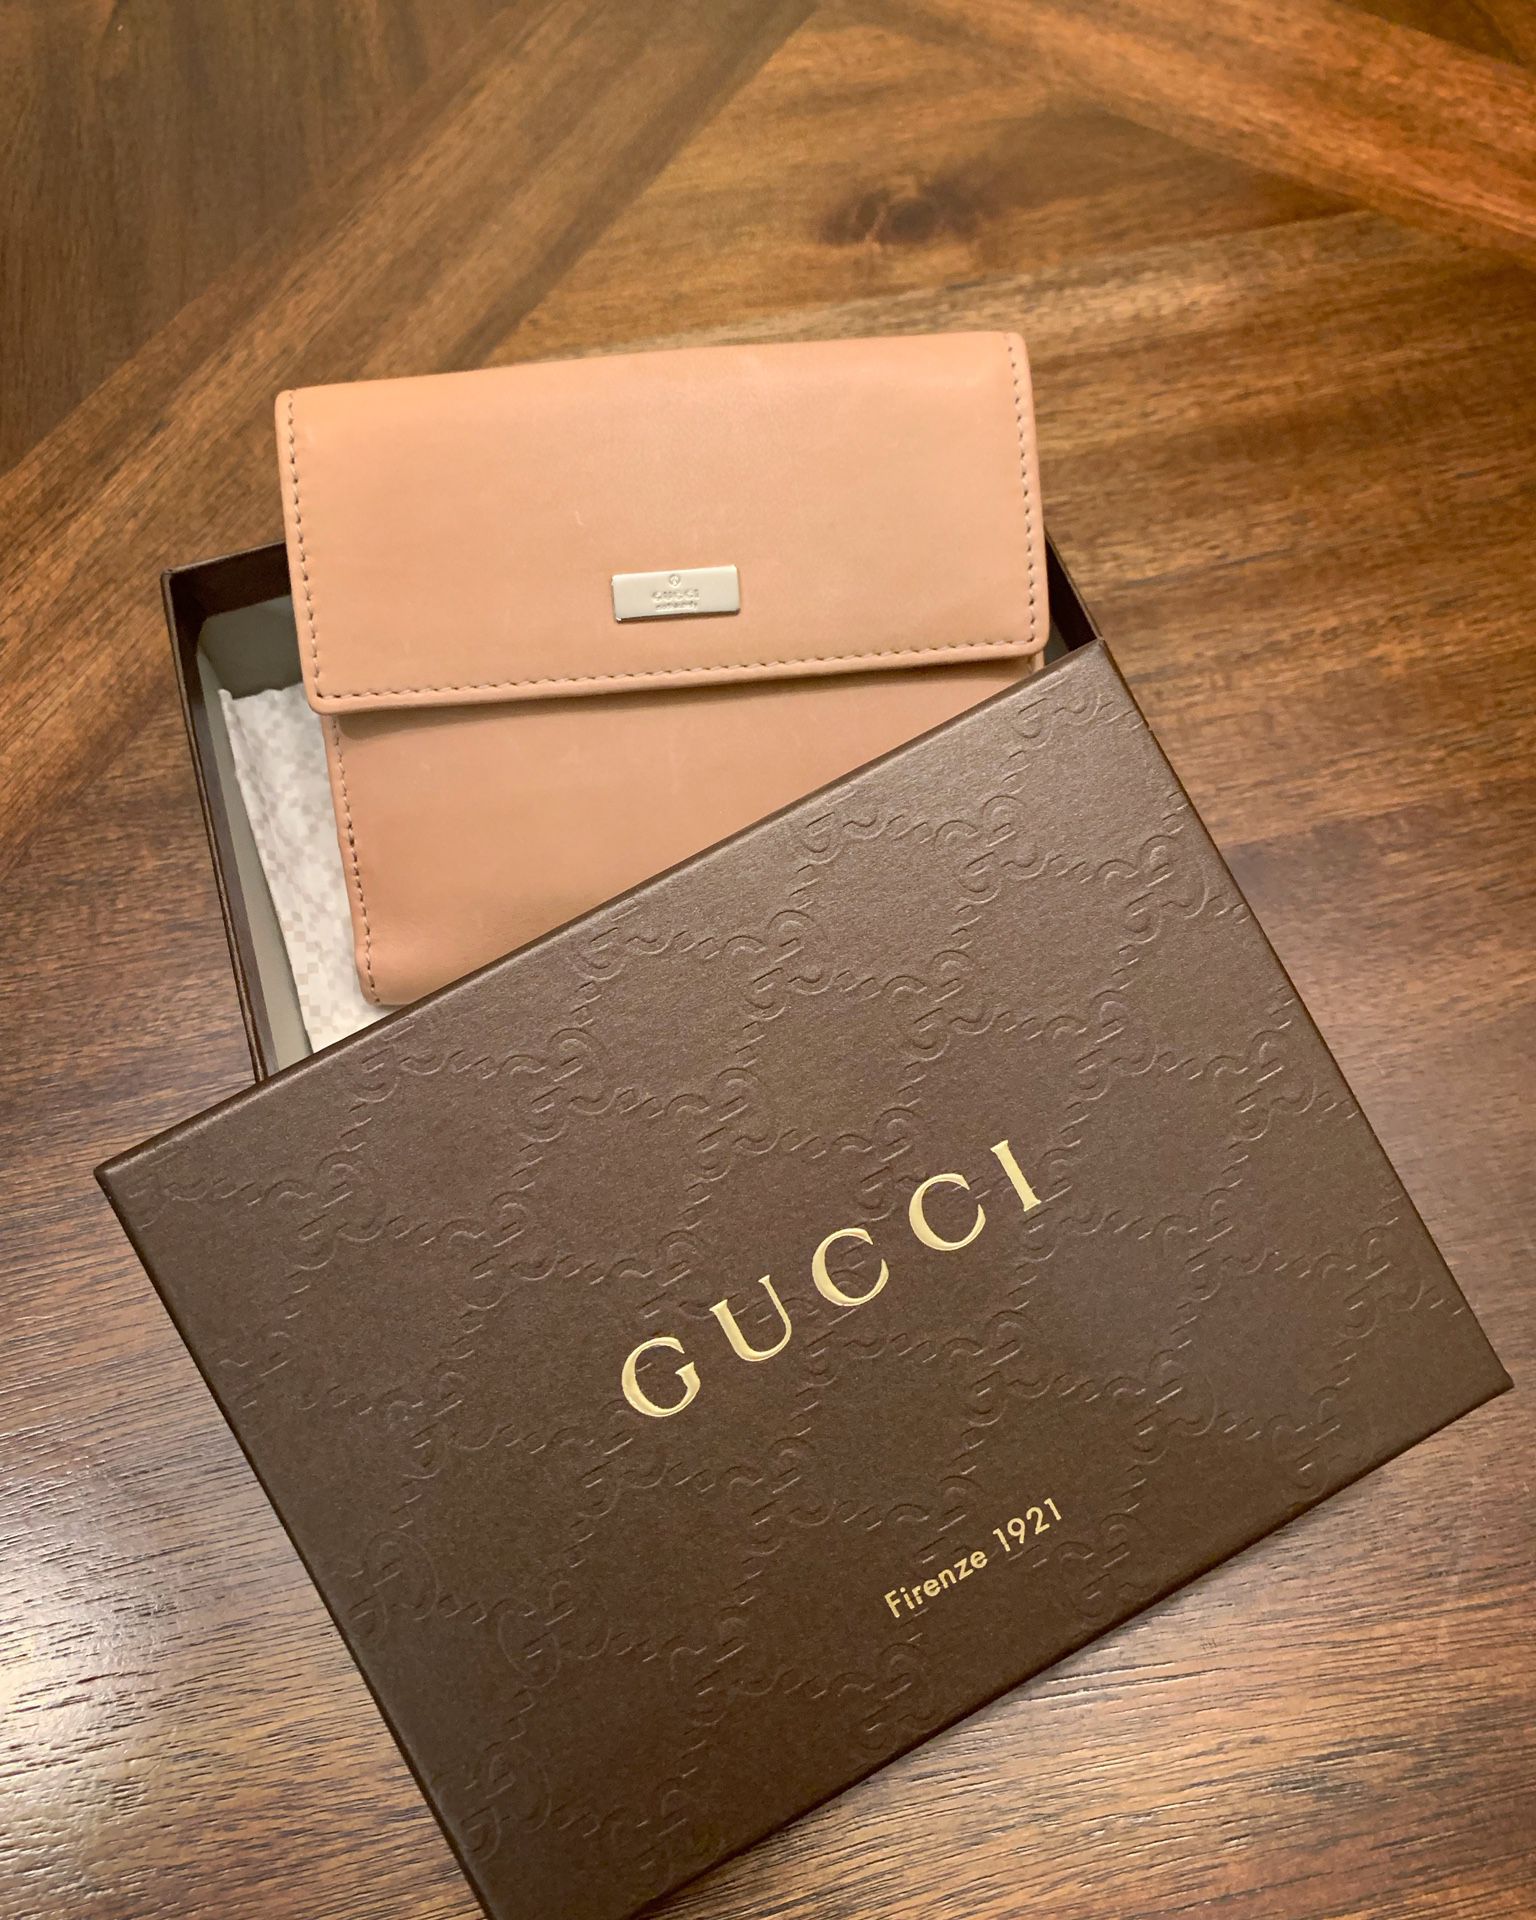 Gucci women’s wallet purse